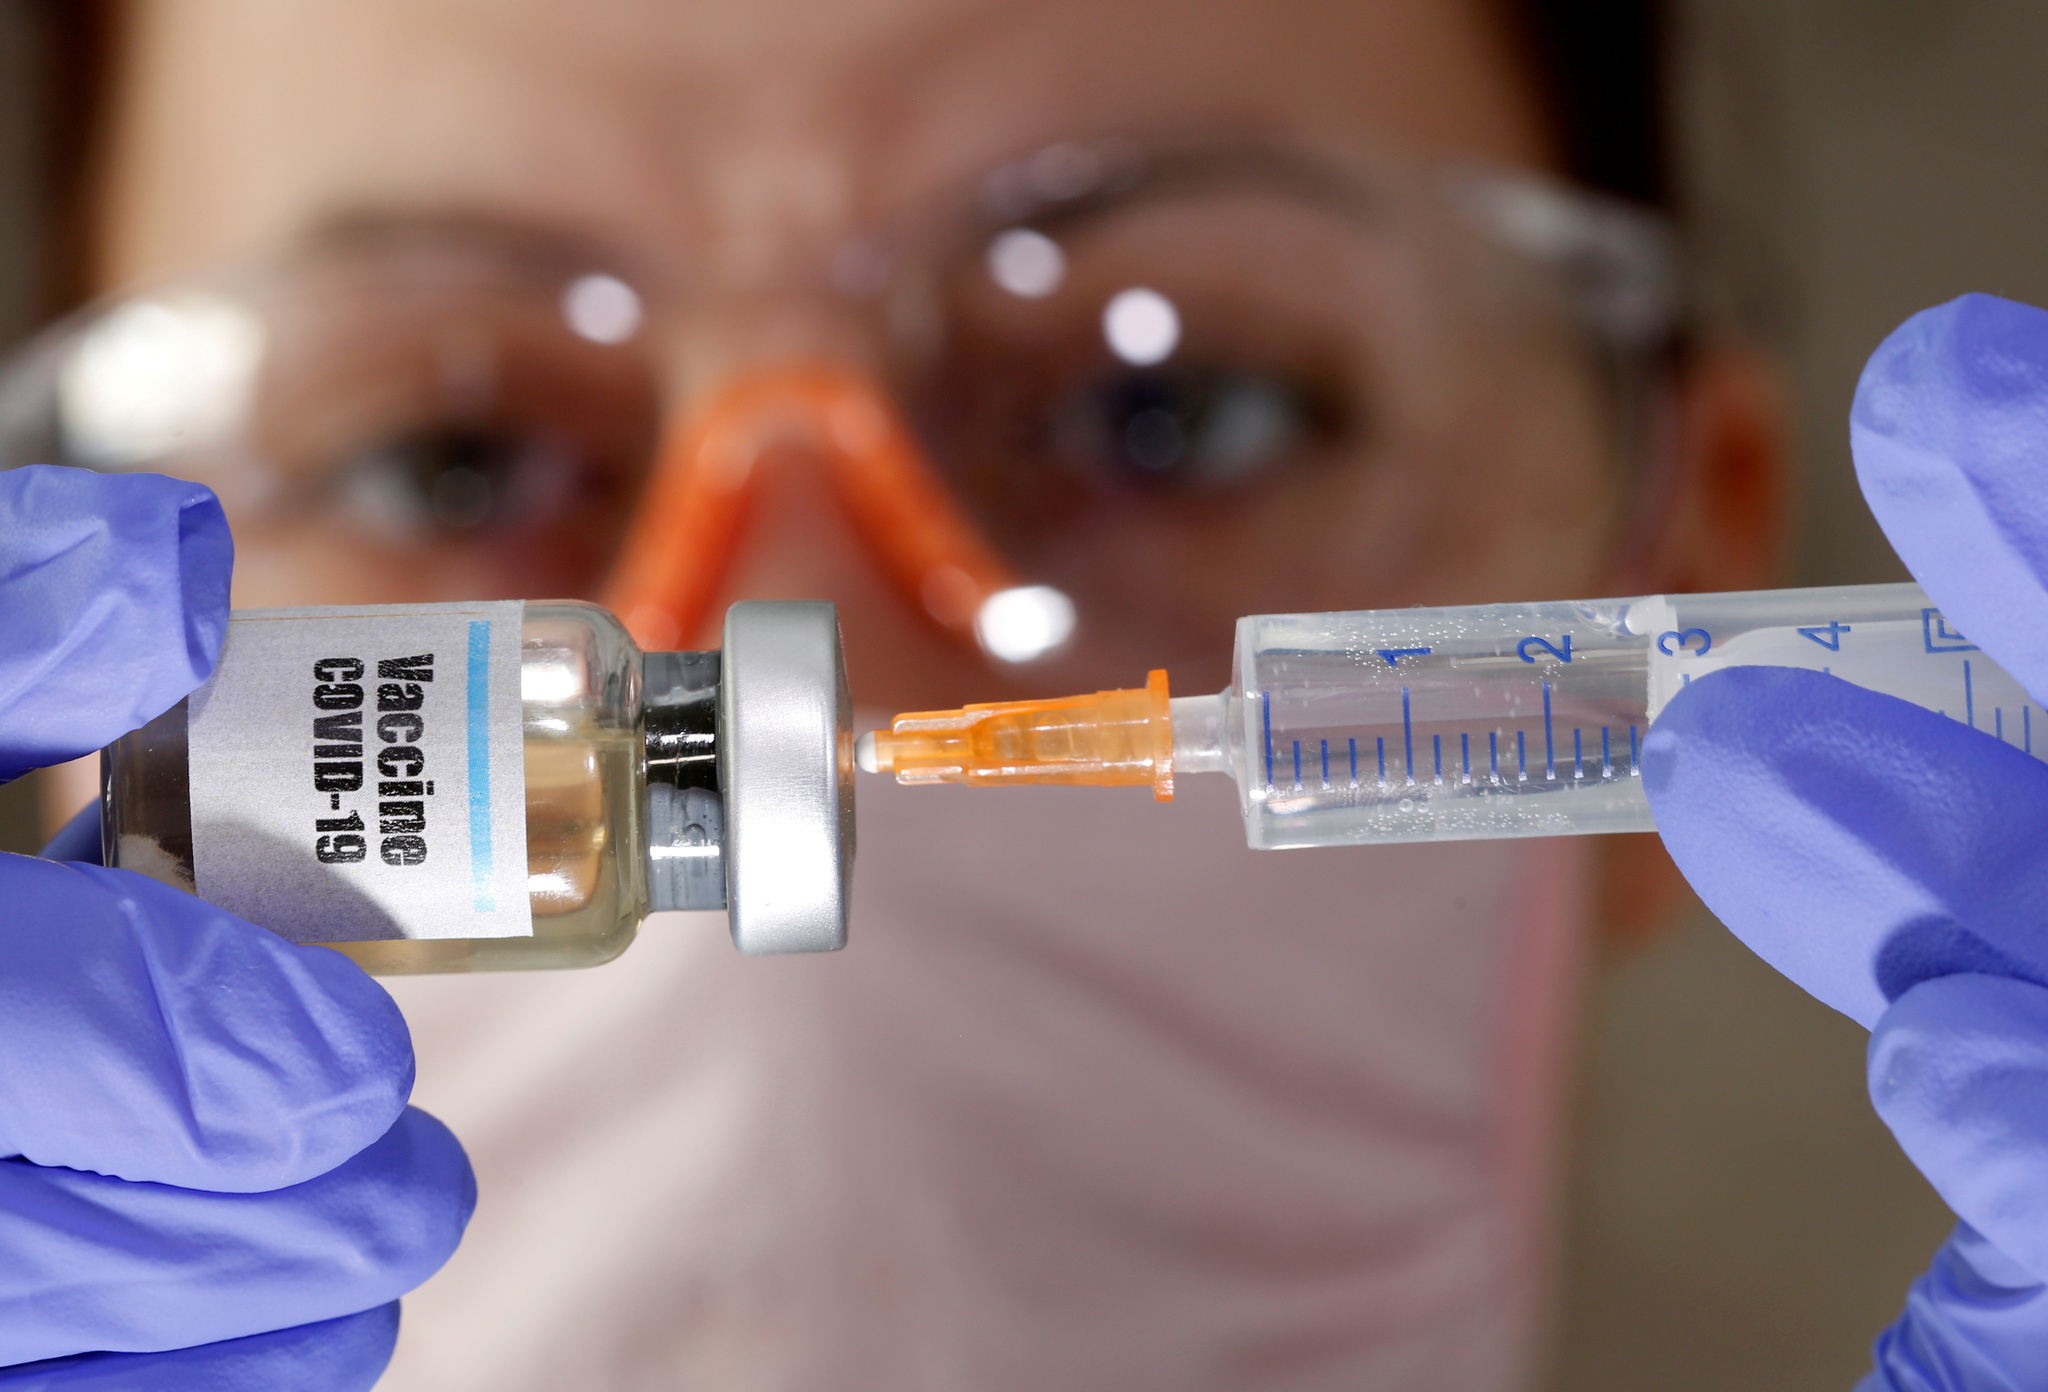 Estados Unidos espera iniciar vacunación contra Covid-19 en diciembre